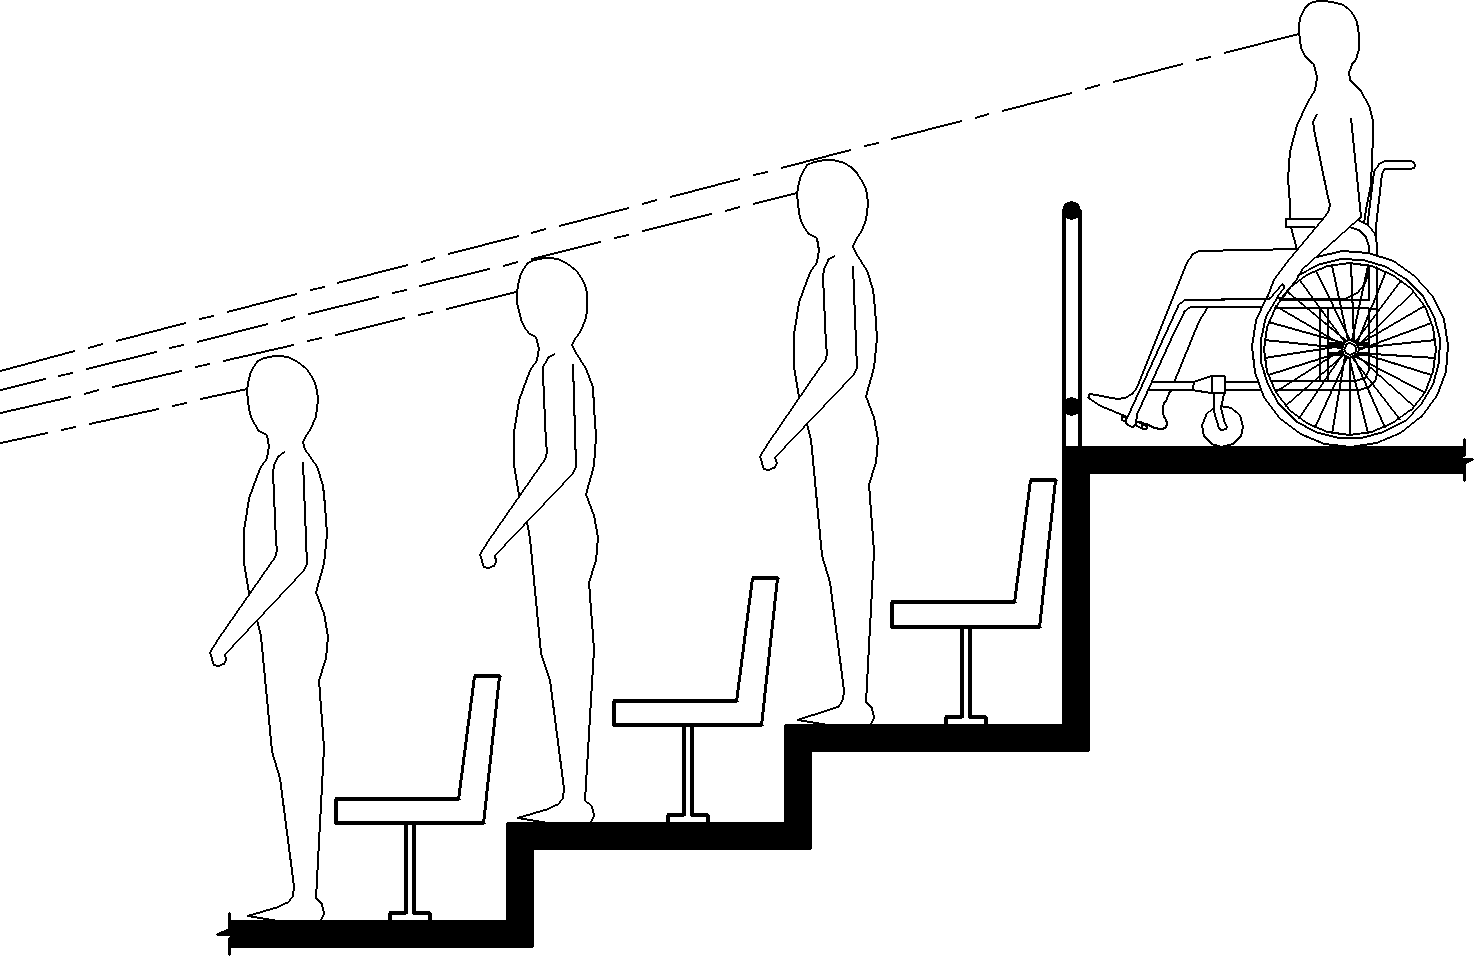 El dibujo de elevación muestra a una persona usando una silla de ruedas en un nivel superior de asientos escalonados lo suficientemente elevados como para tener una línea de visión sobre las cabezas de los espectadores de pie en frente